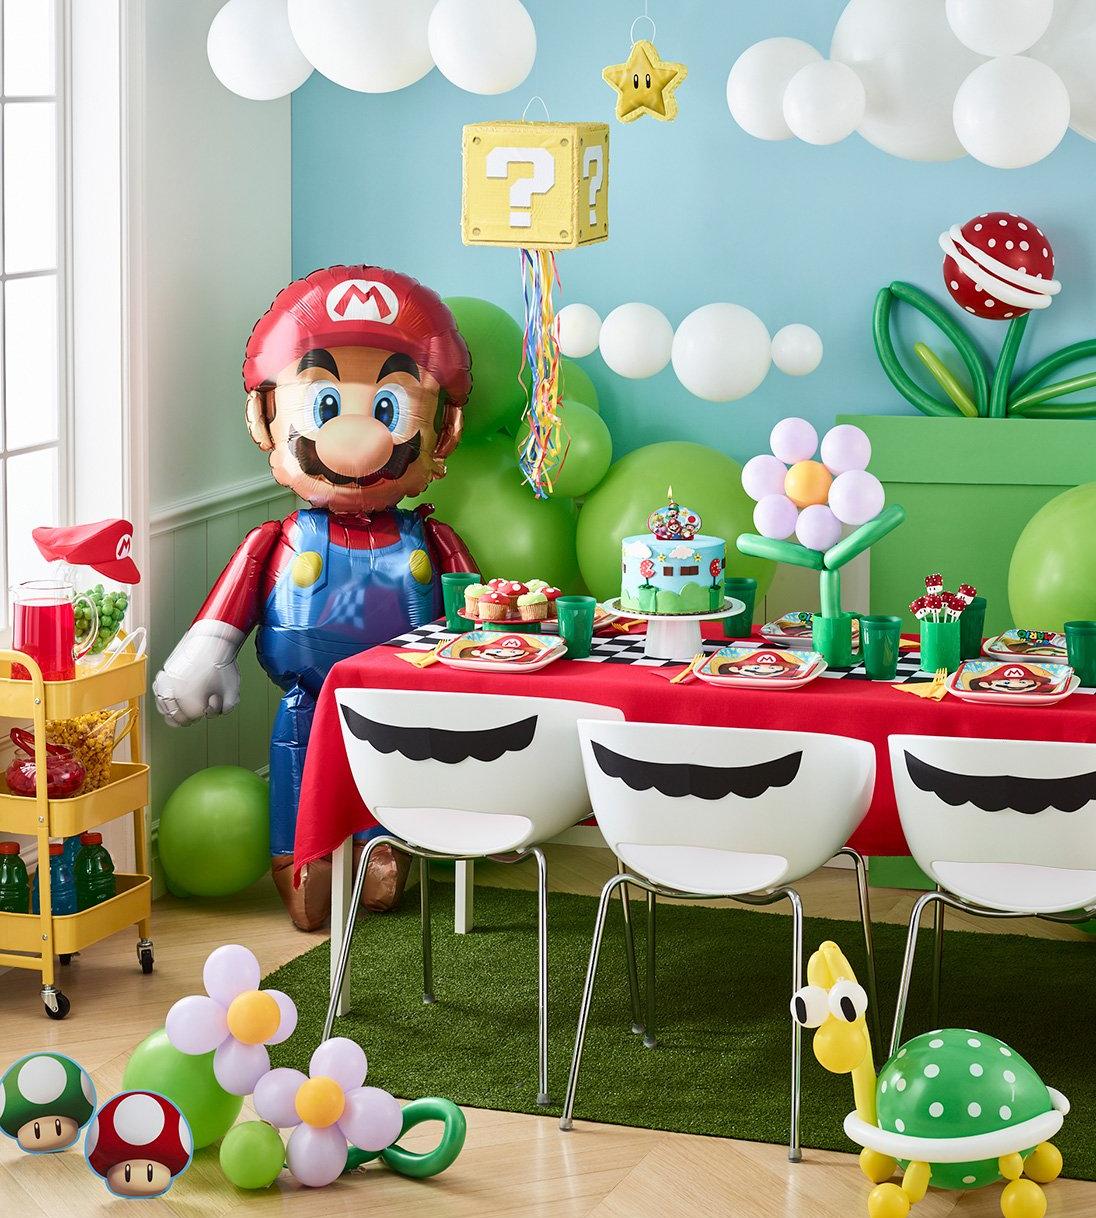 Super Mario Party Ideas